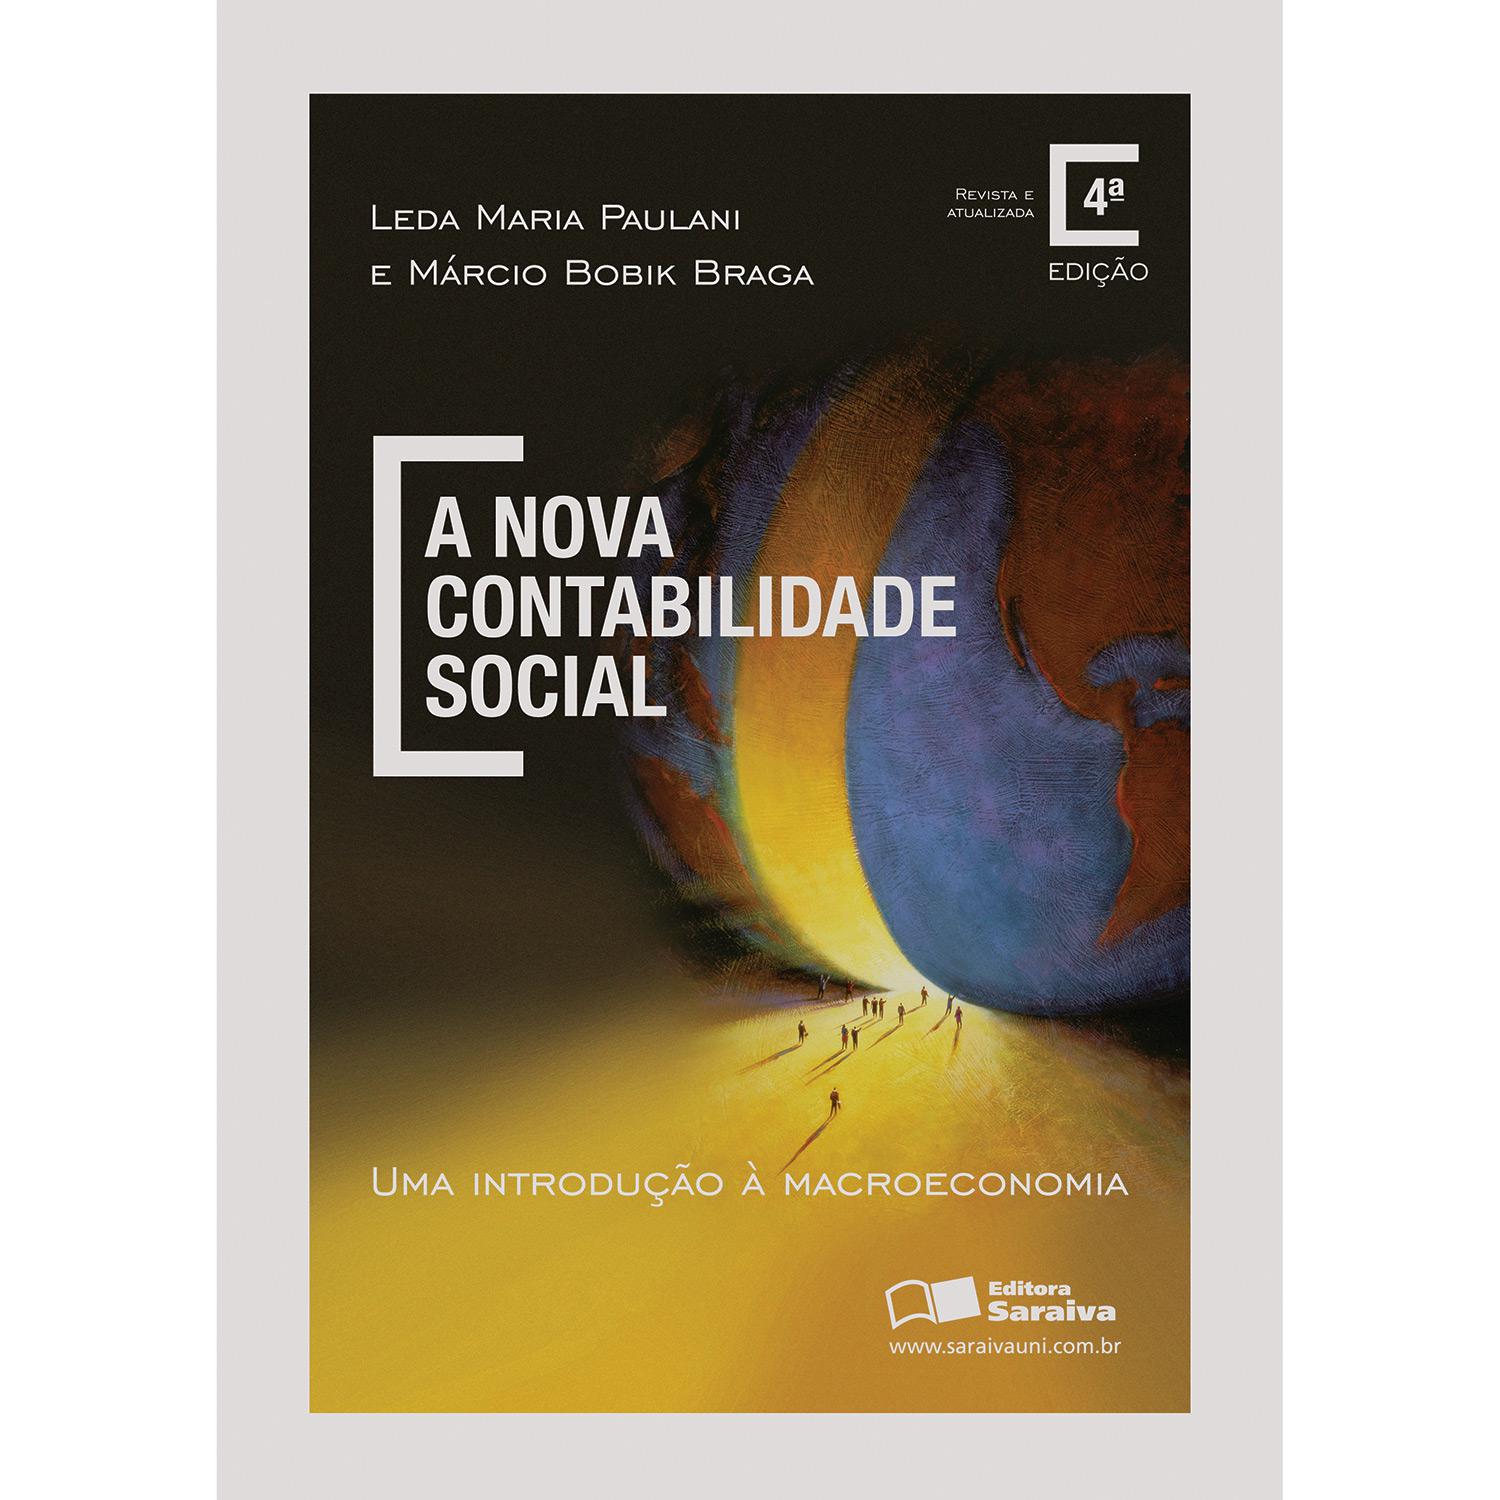 Livro - A Nova Contabilidade Social: Uma Introdução à Macroeconomia é bom? Vale a pena?